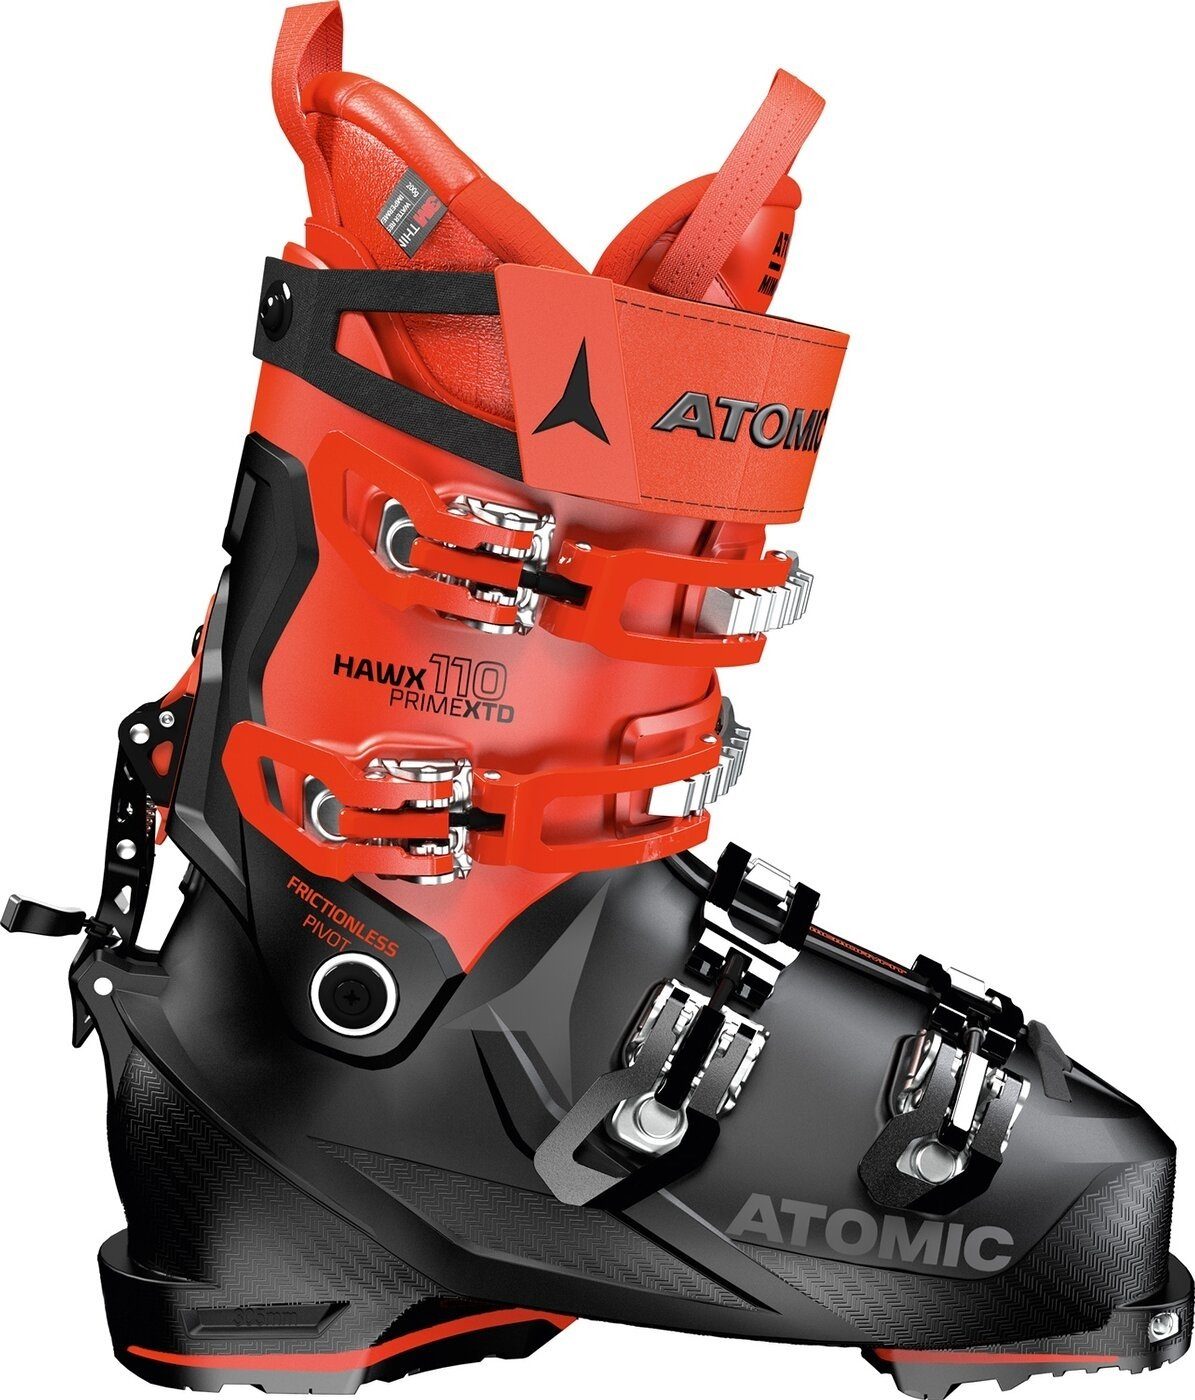 Skistiefel XTD110 Hawx Prime Atomic 0 Skischuh